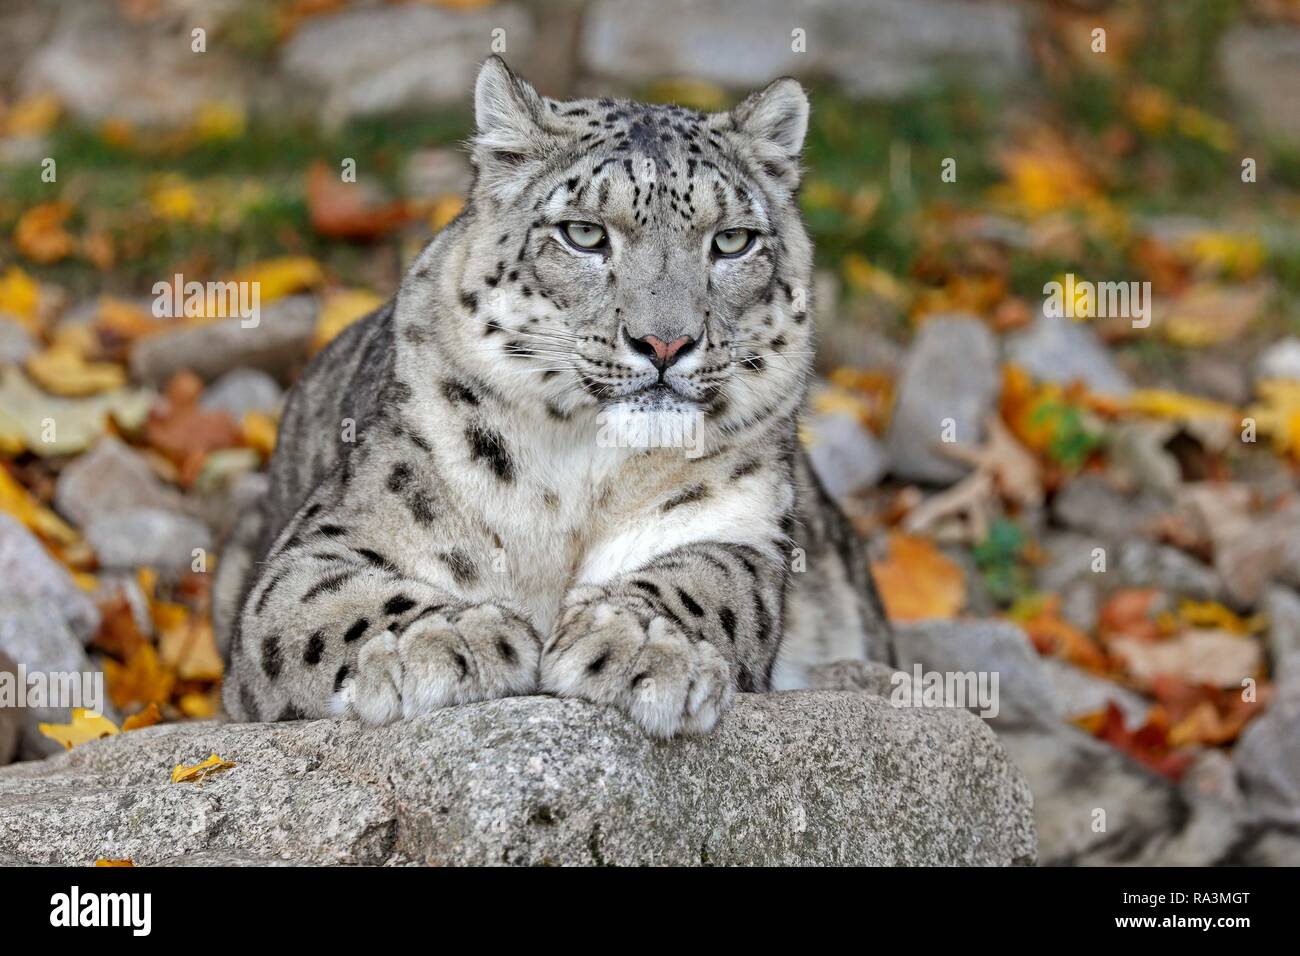 Snow Leopard (Panthera uncia), liegen auf Felsen, Tier Portrait, Captive, Deutschland Stockfoto